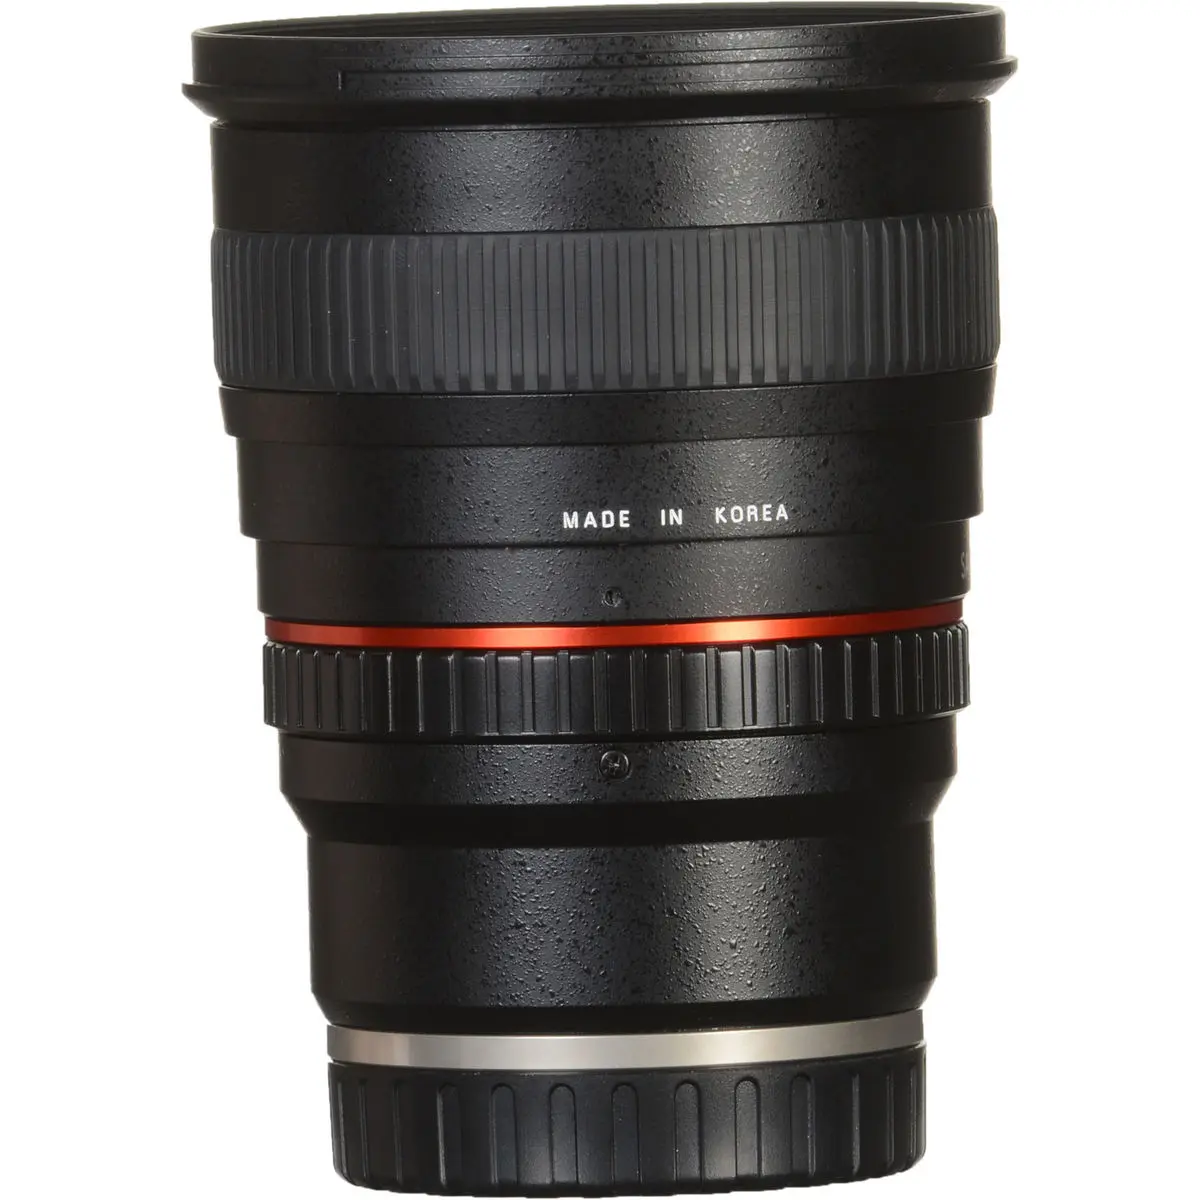 6. Samyang 50 mm f/1.4 AS UMC (Sony E) Lens